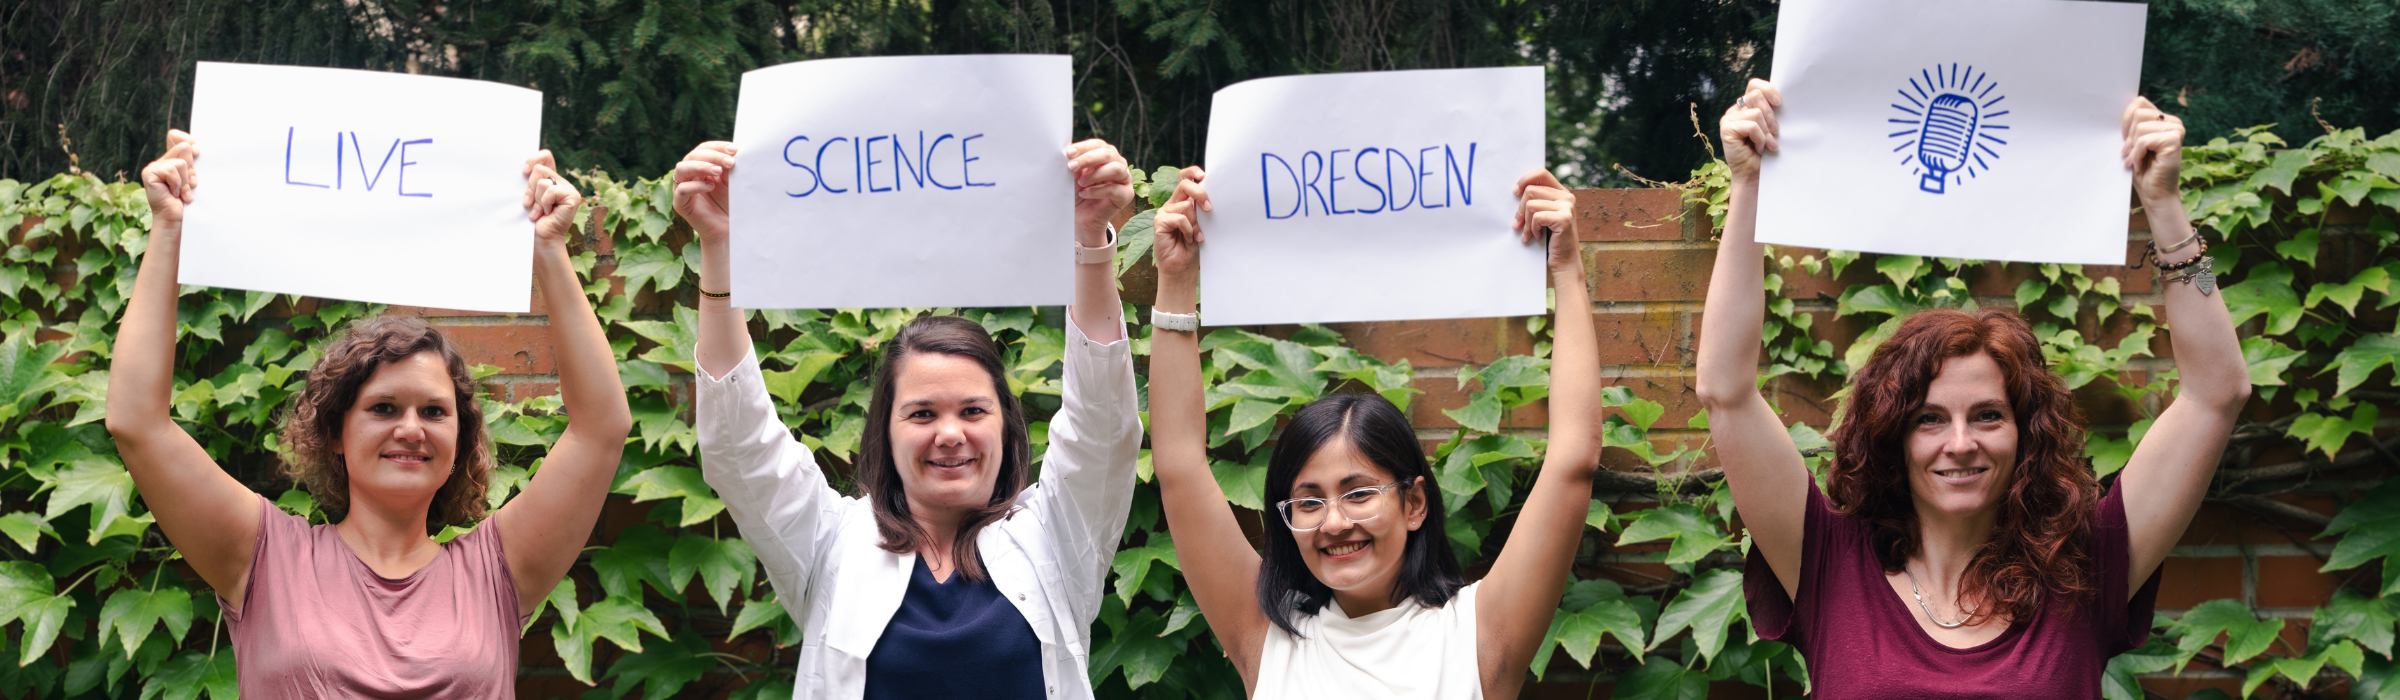 Das Team steht in einer Reihe vor einer Mauer und hält vier weiße Plakate über ihren Köpfen, auf denen Live Science Dresden steht.